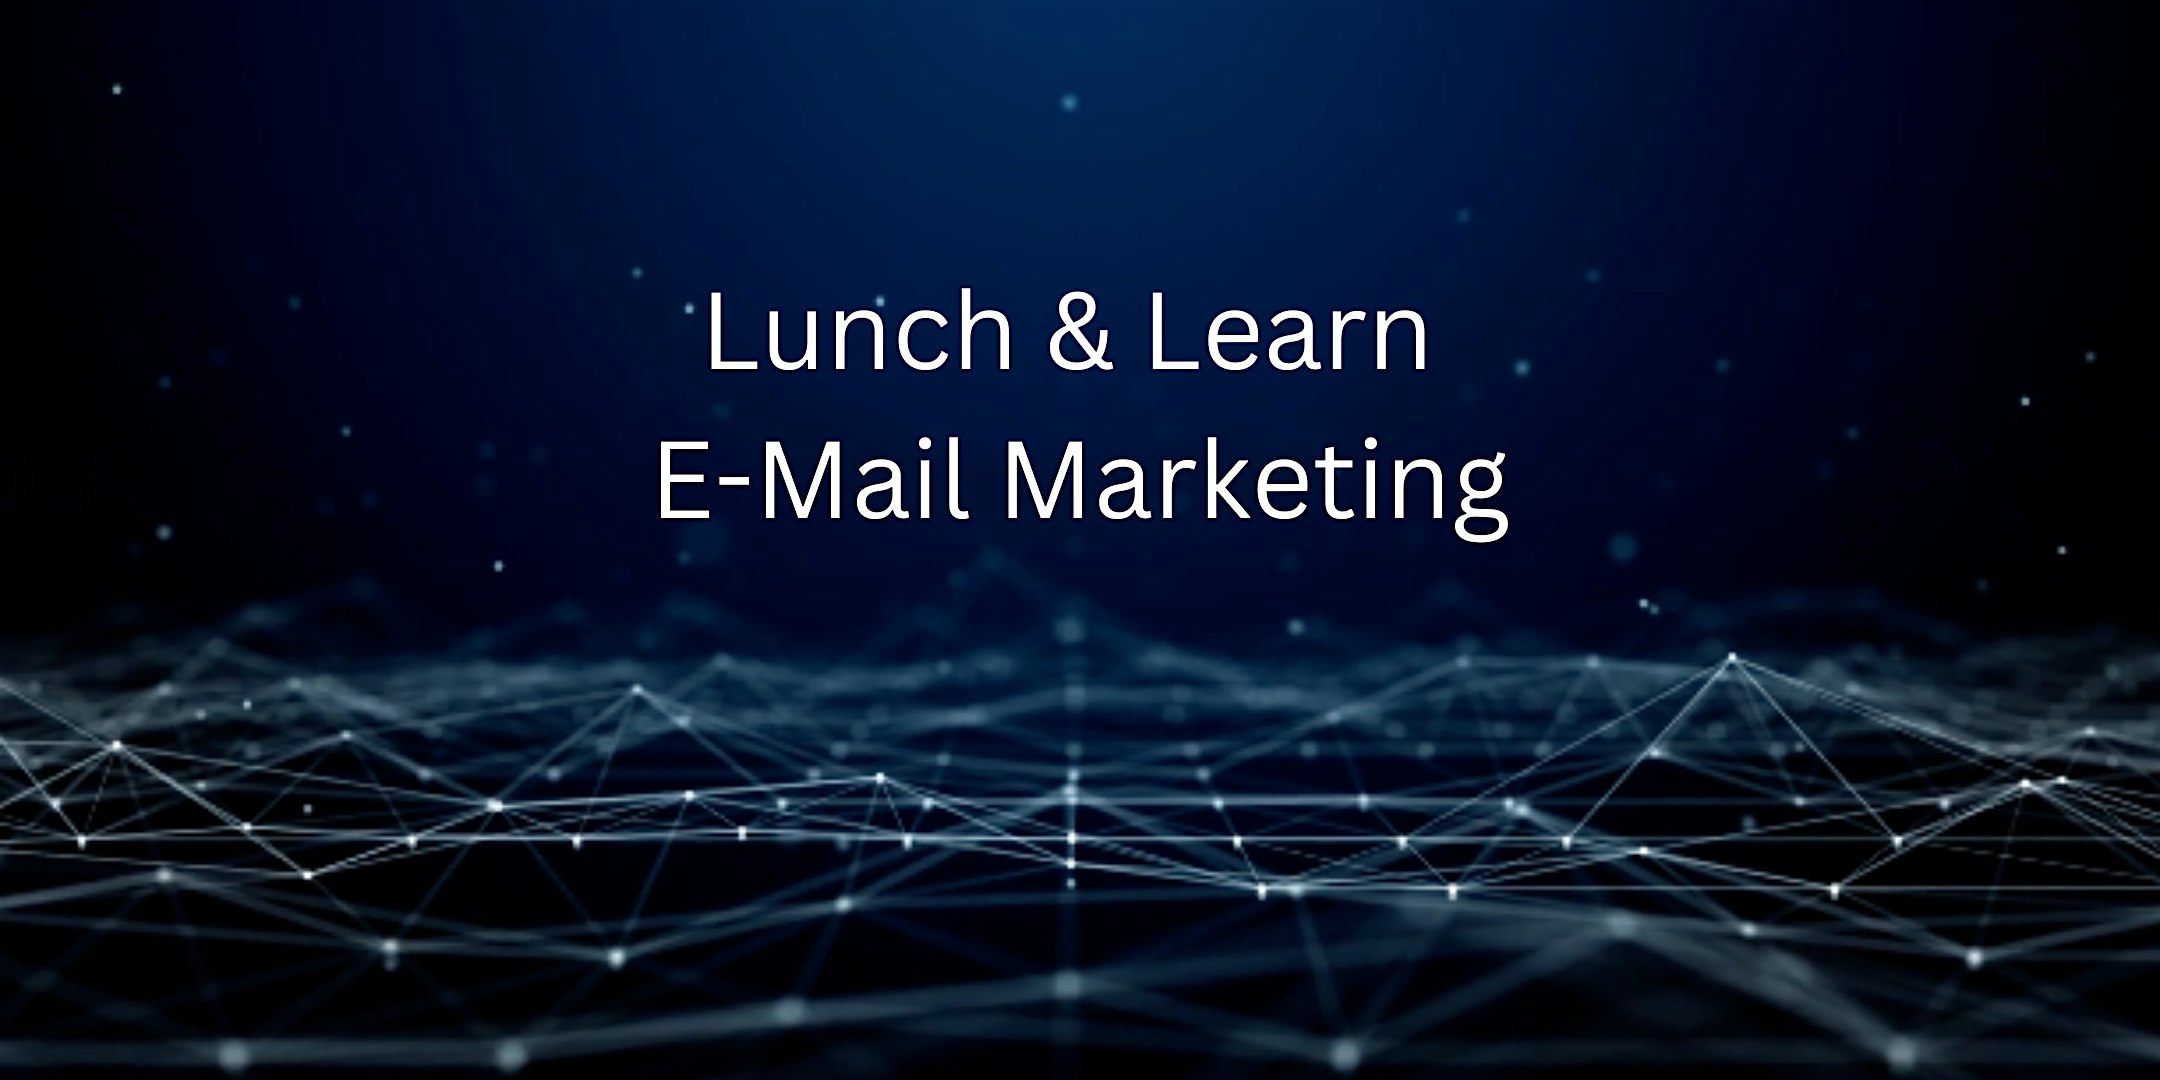 Veranstaltungsbild für die Veranstaltung Lunch&Learn - E-Mail Marketing/Sicherheit